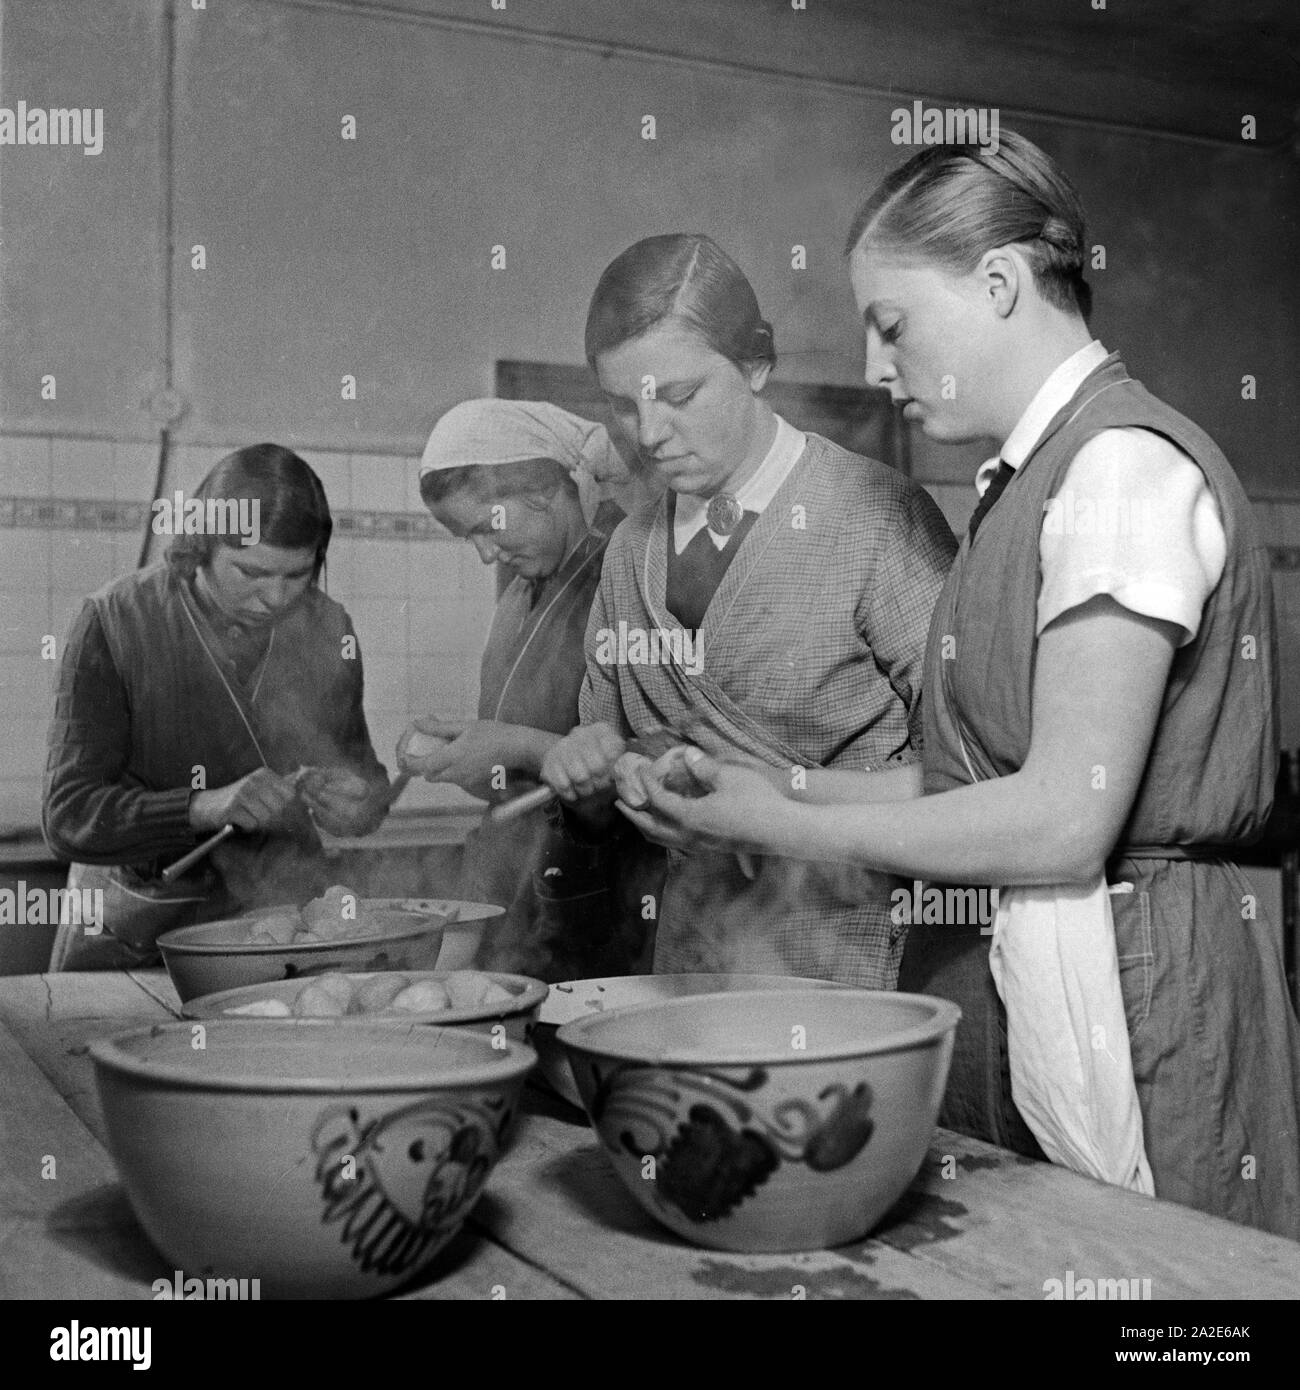 Frauen schälen Pellkartoffeln beim weiblichen Arbeitsdienst in Molkenberg bei Fürstenwalde, Deutschland 1930er Jahre. Women peeling potatoes in the skin at the female workforce group of Molkenberg, Germany 1930s. Stock Photo